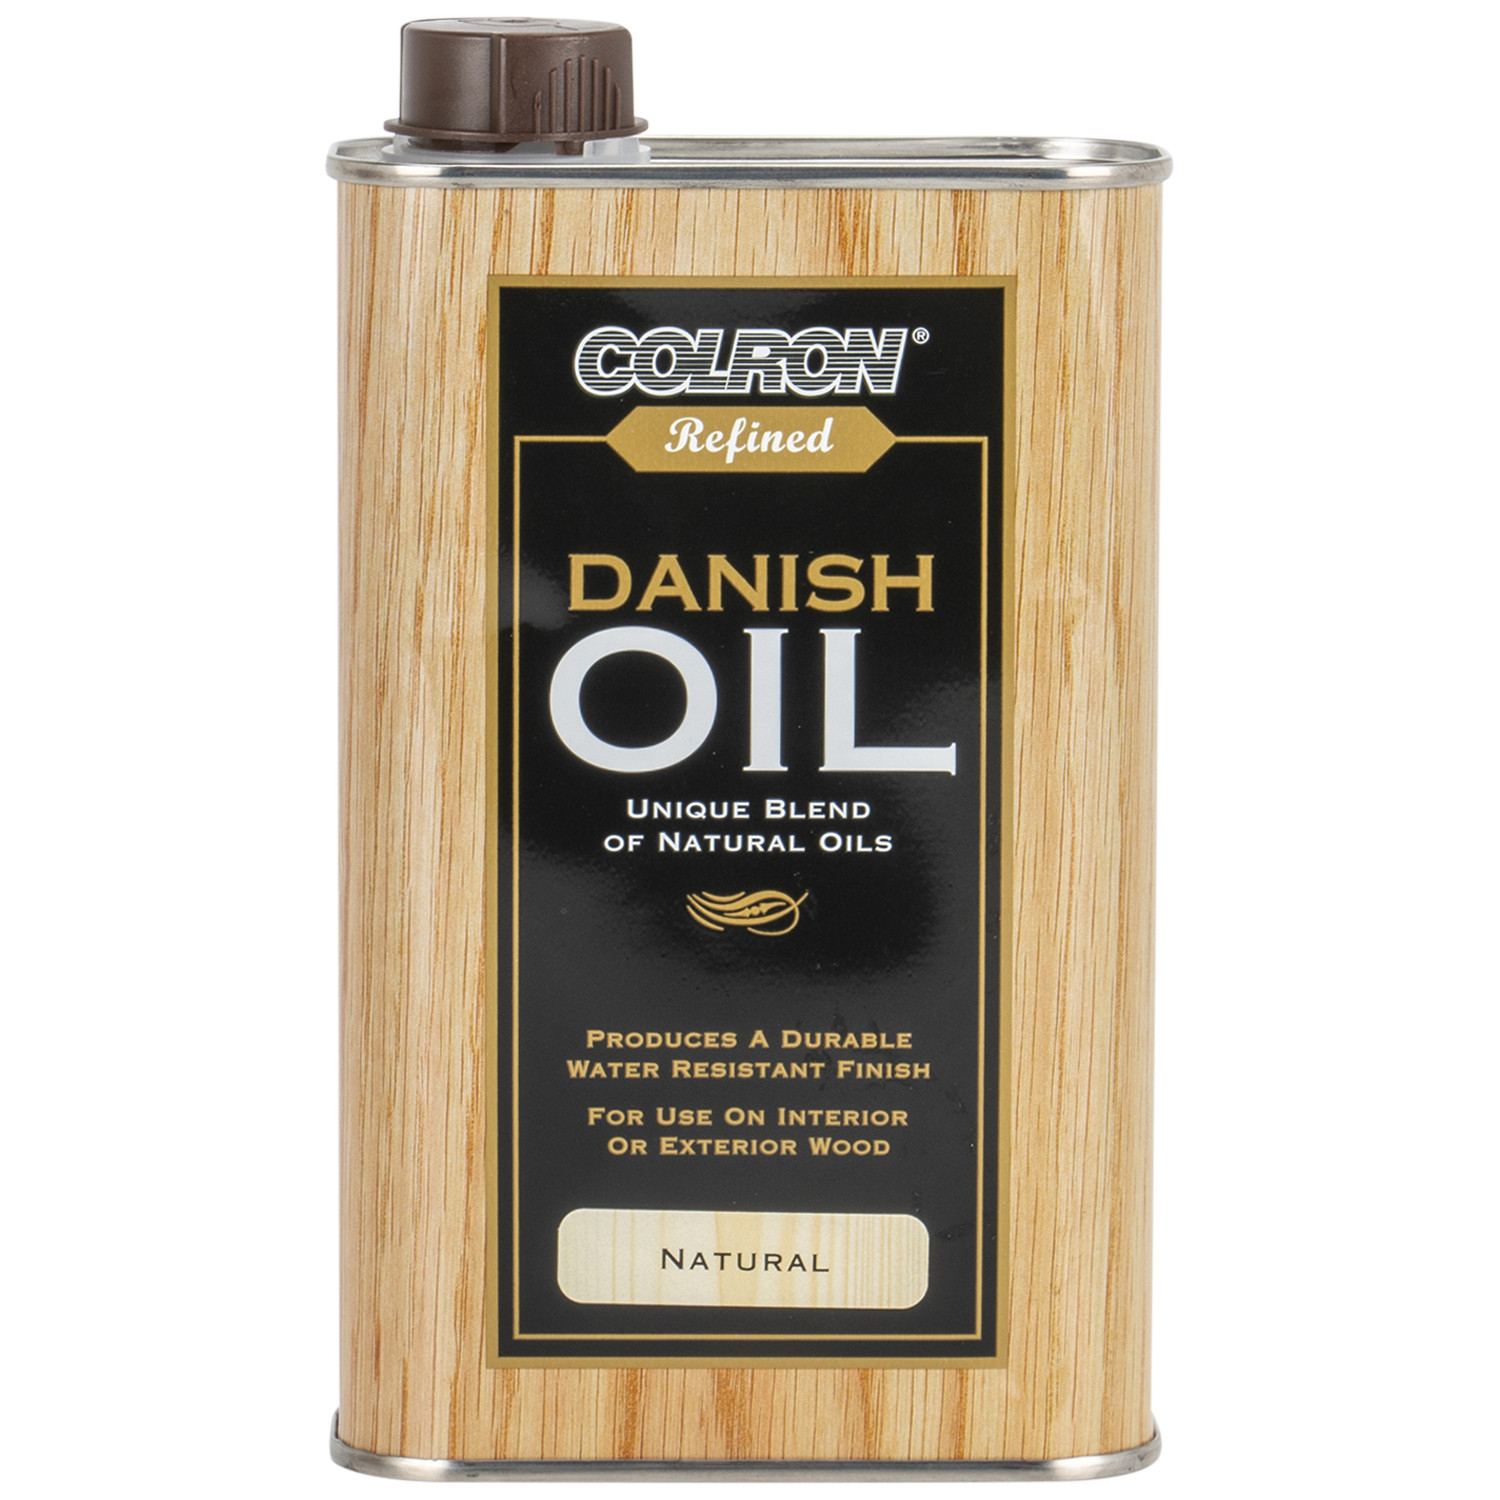 Colron Refined Natural Danish Oil 500ml Image